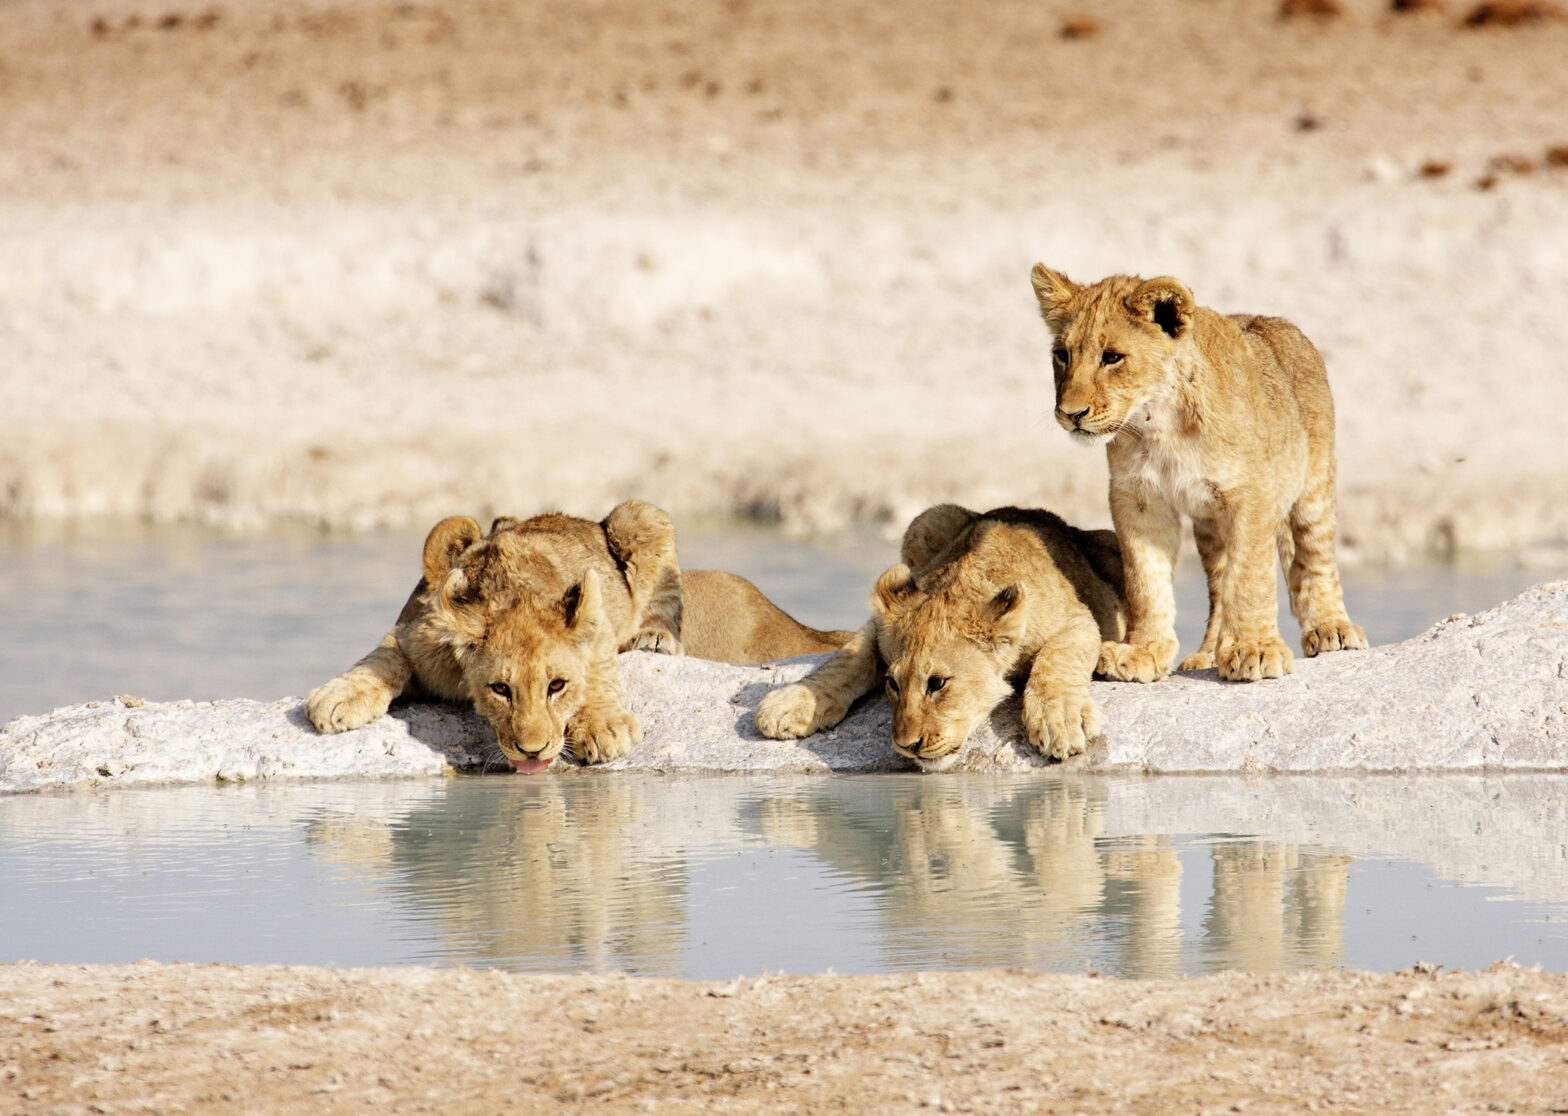 Lions in Etosha National Park, Namibia